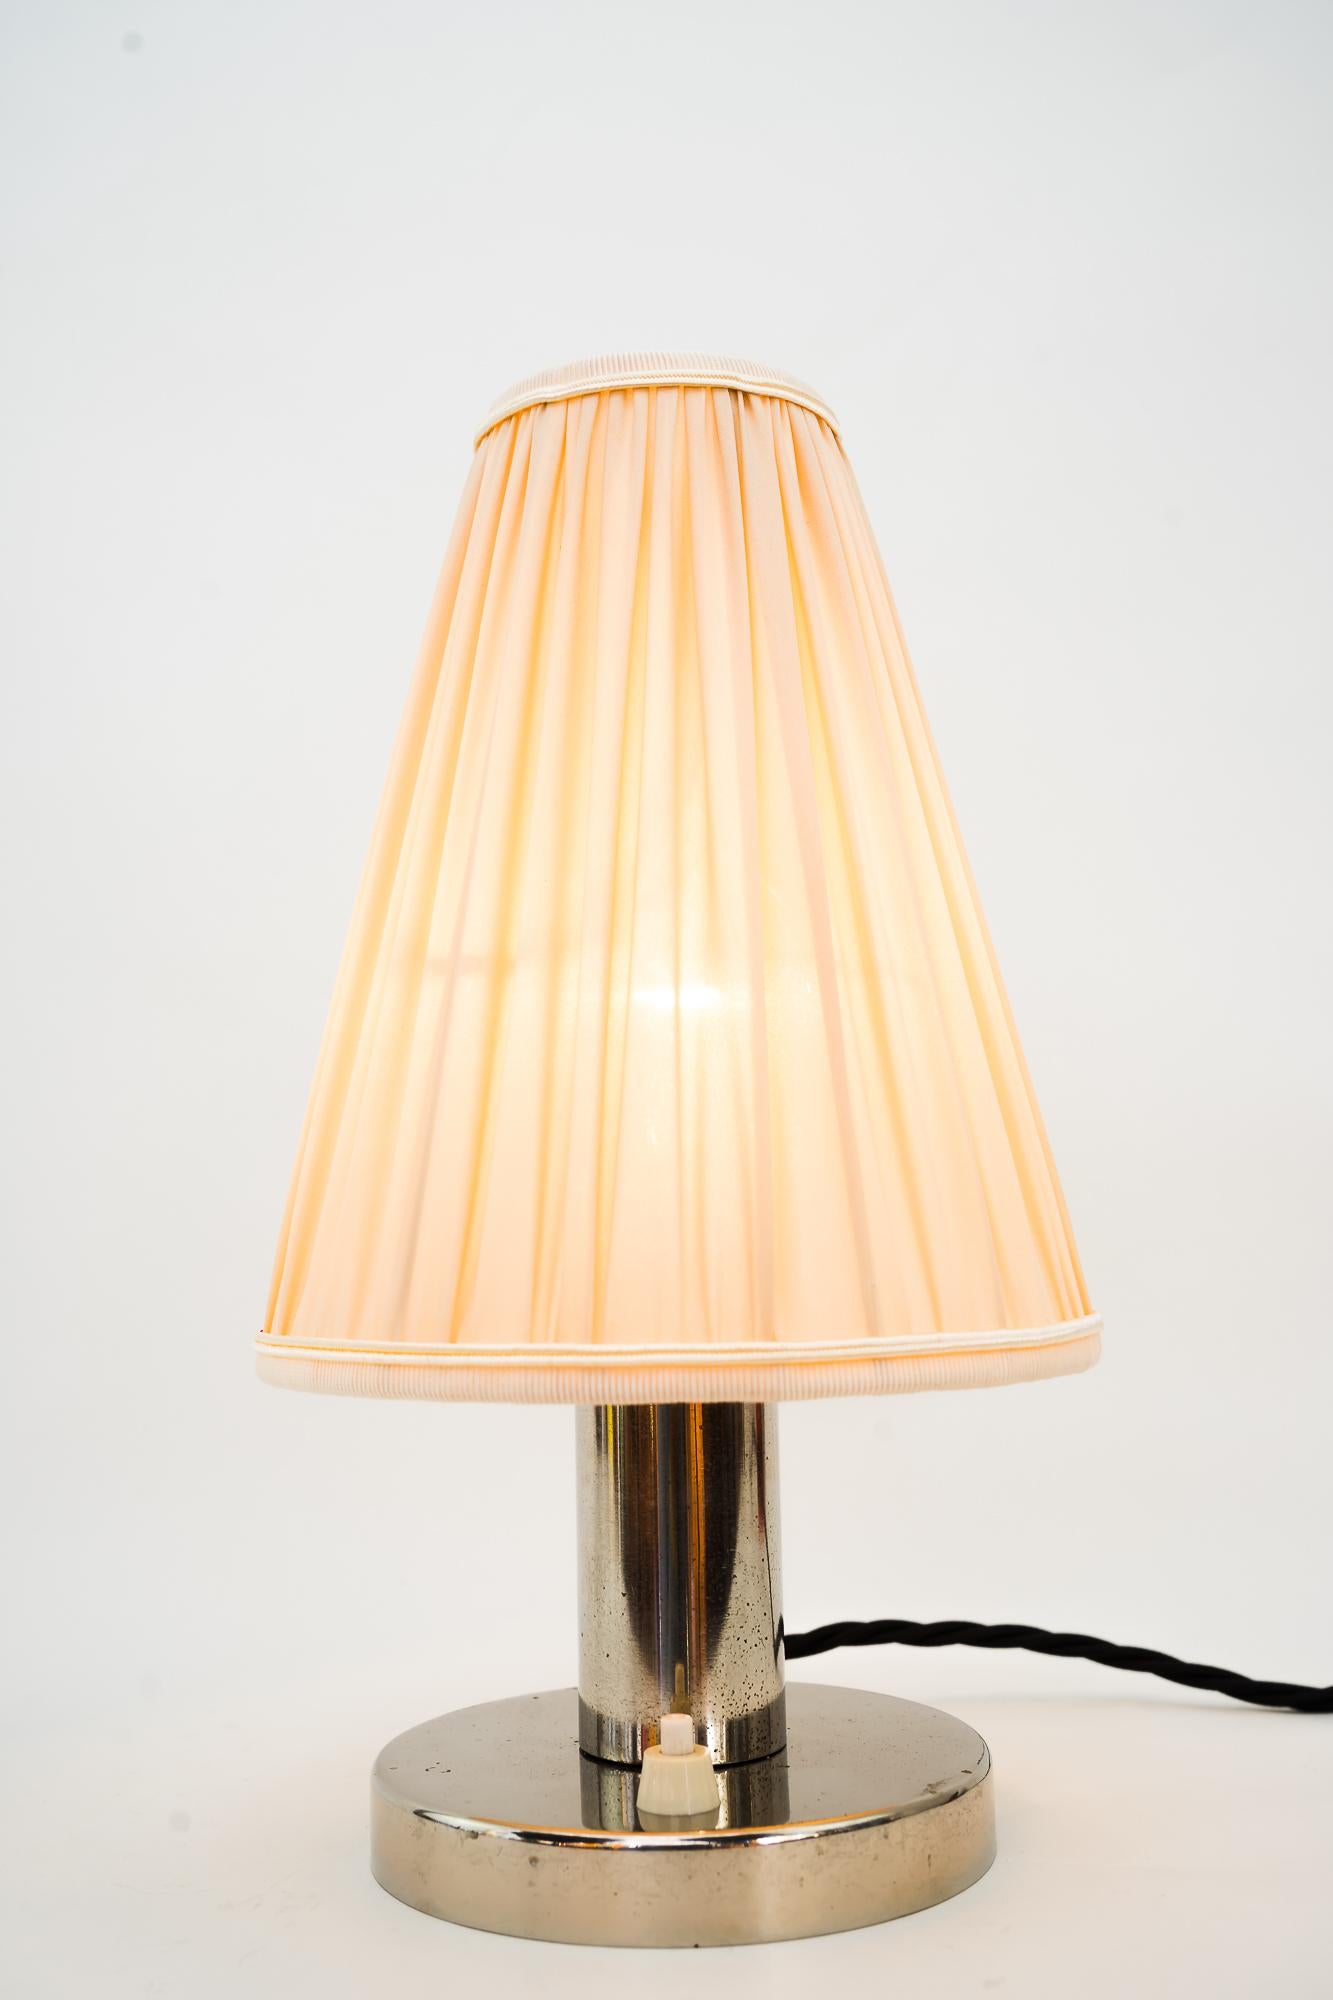 Nickel Art Deco Tischlampe Wien um 1920er Jahre
Originalzustand
Der Schirm wird ersetzt (neu).